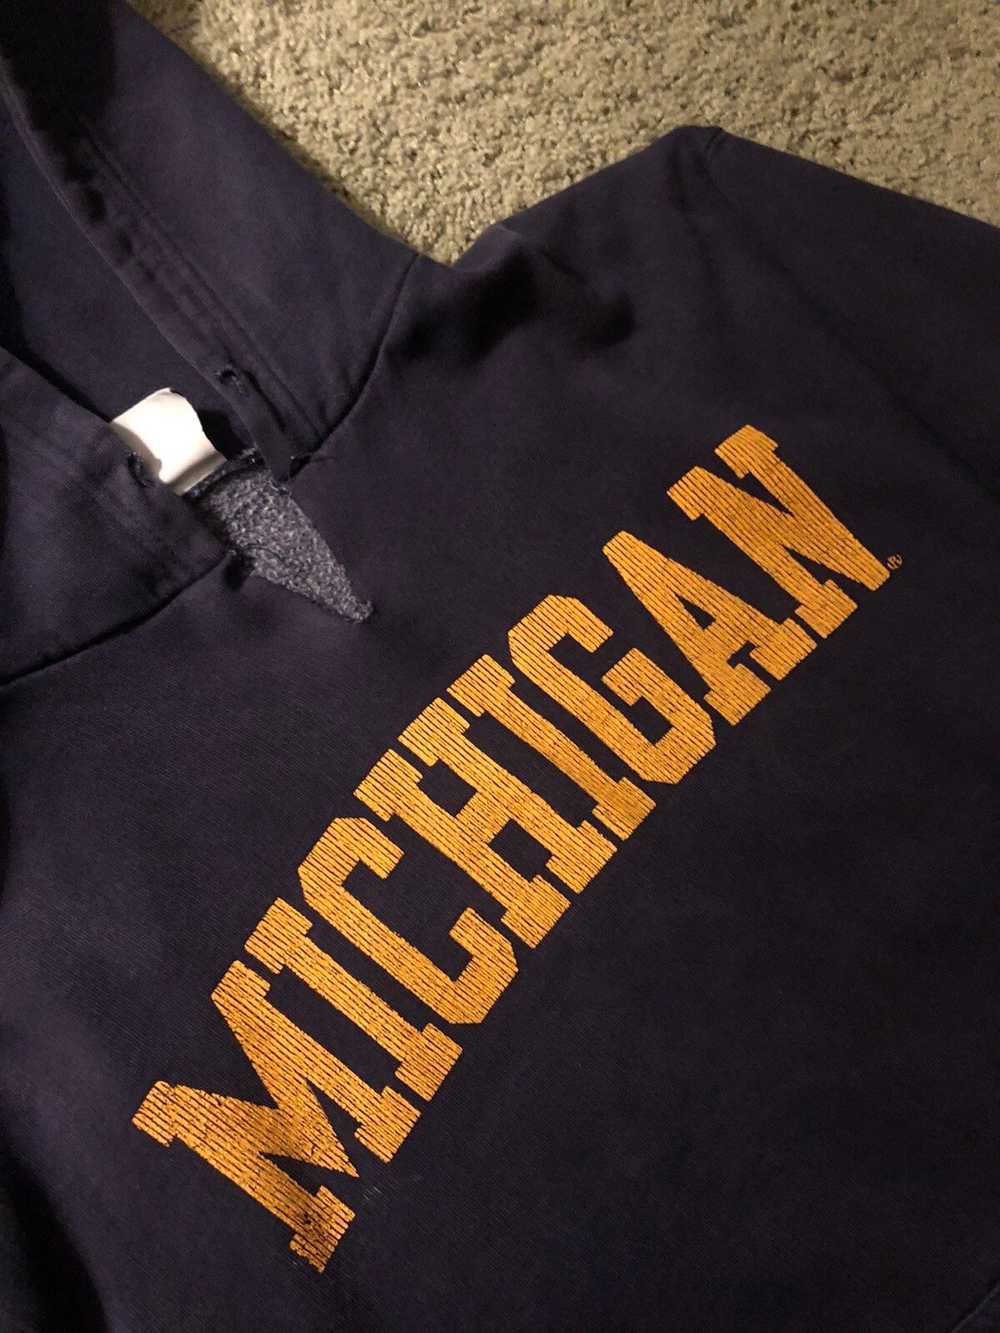 American College × Vintage Vintage Michigan Hoodie - image 2